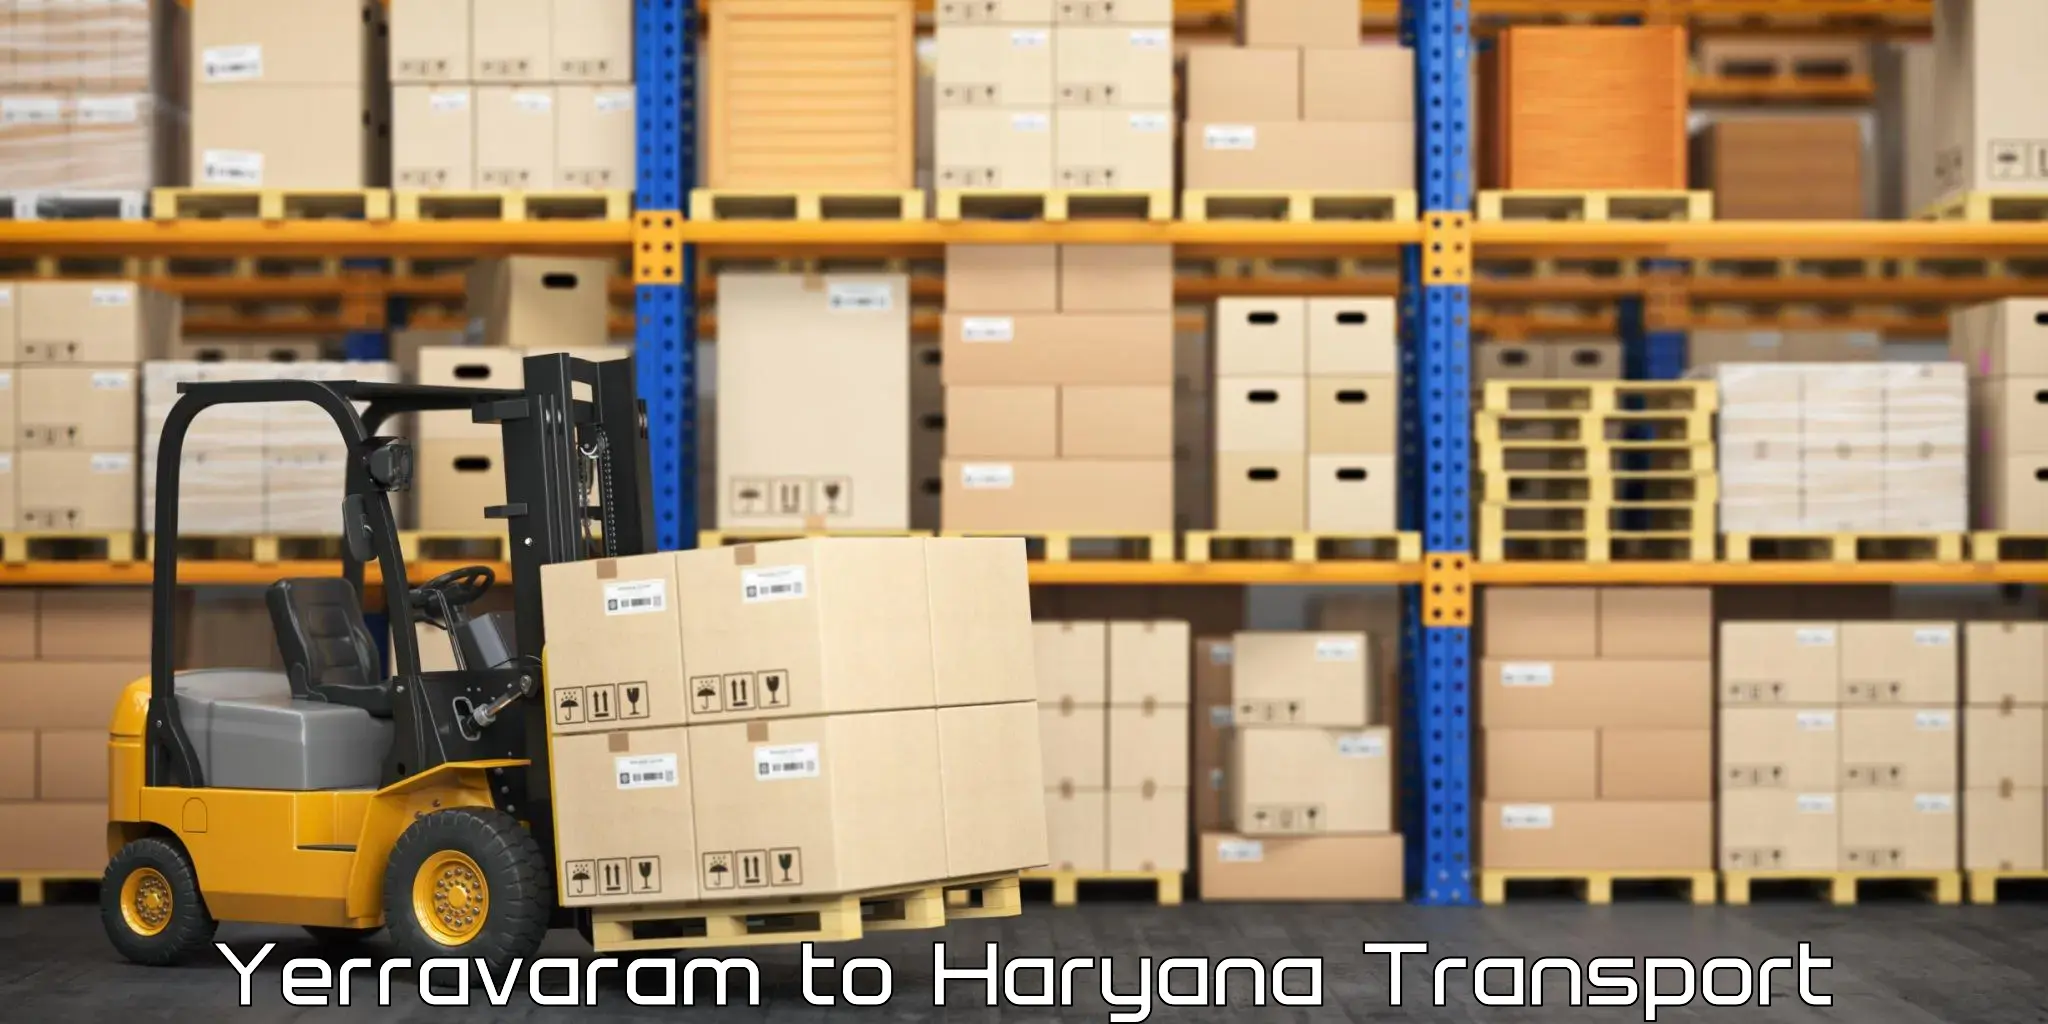 Truck transport companies in India Yerravaram to Gurugram